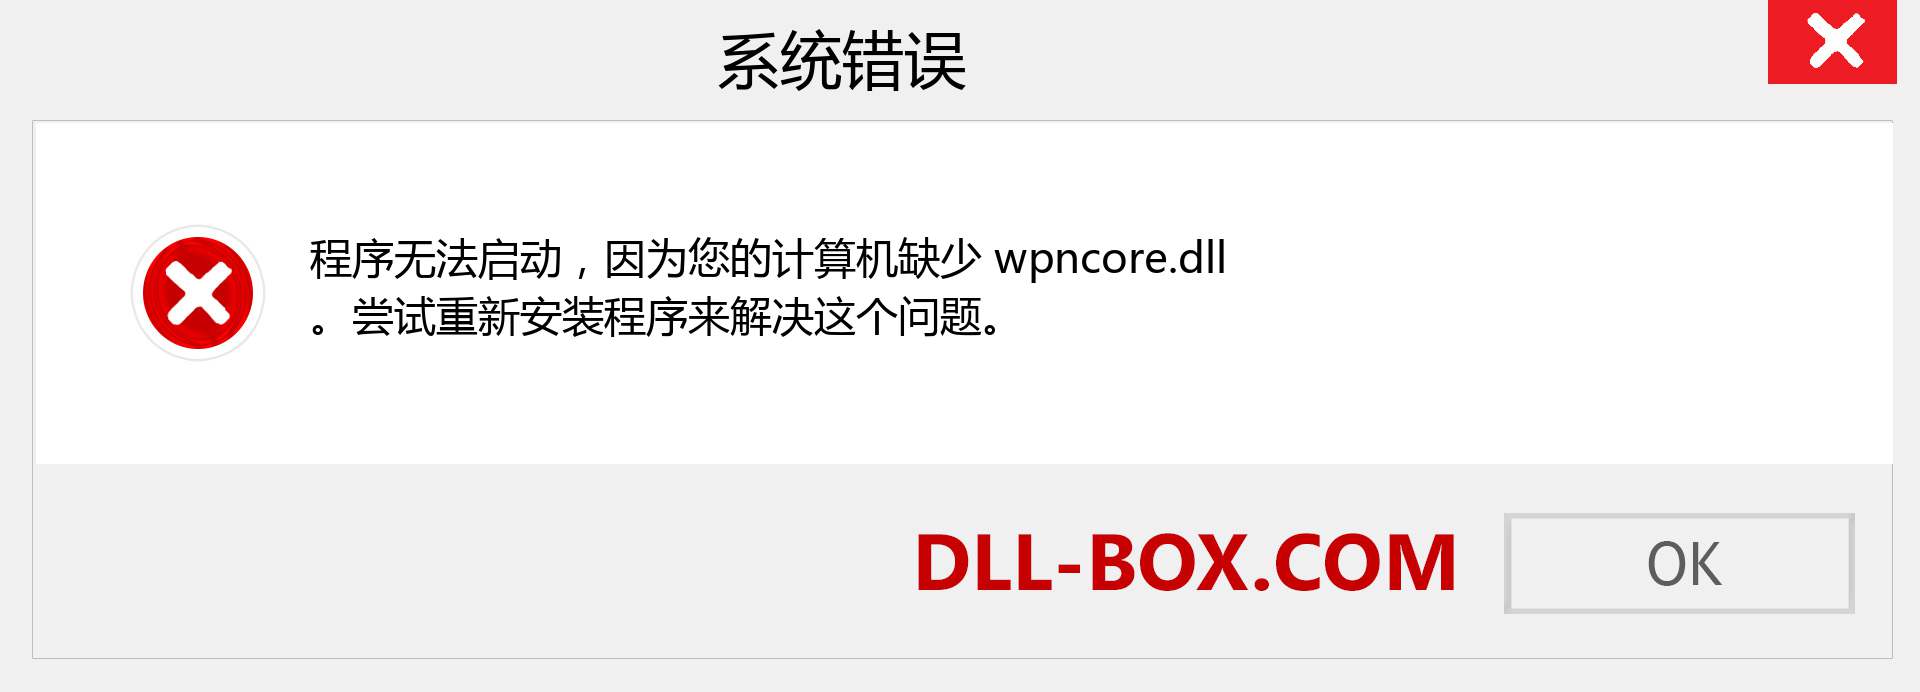 wpncore.dll 文件丢失？。 适用于 Windows 7、8、10 的下载 - 修复 Windows、照片、图像上的 wpncore dll 丢失错误